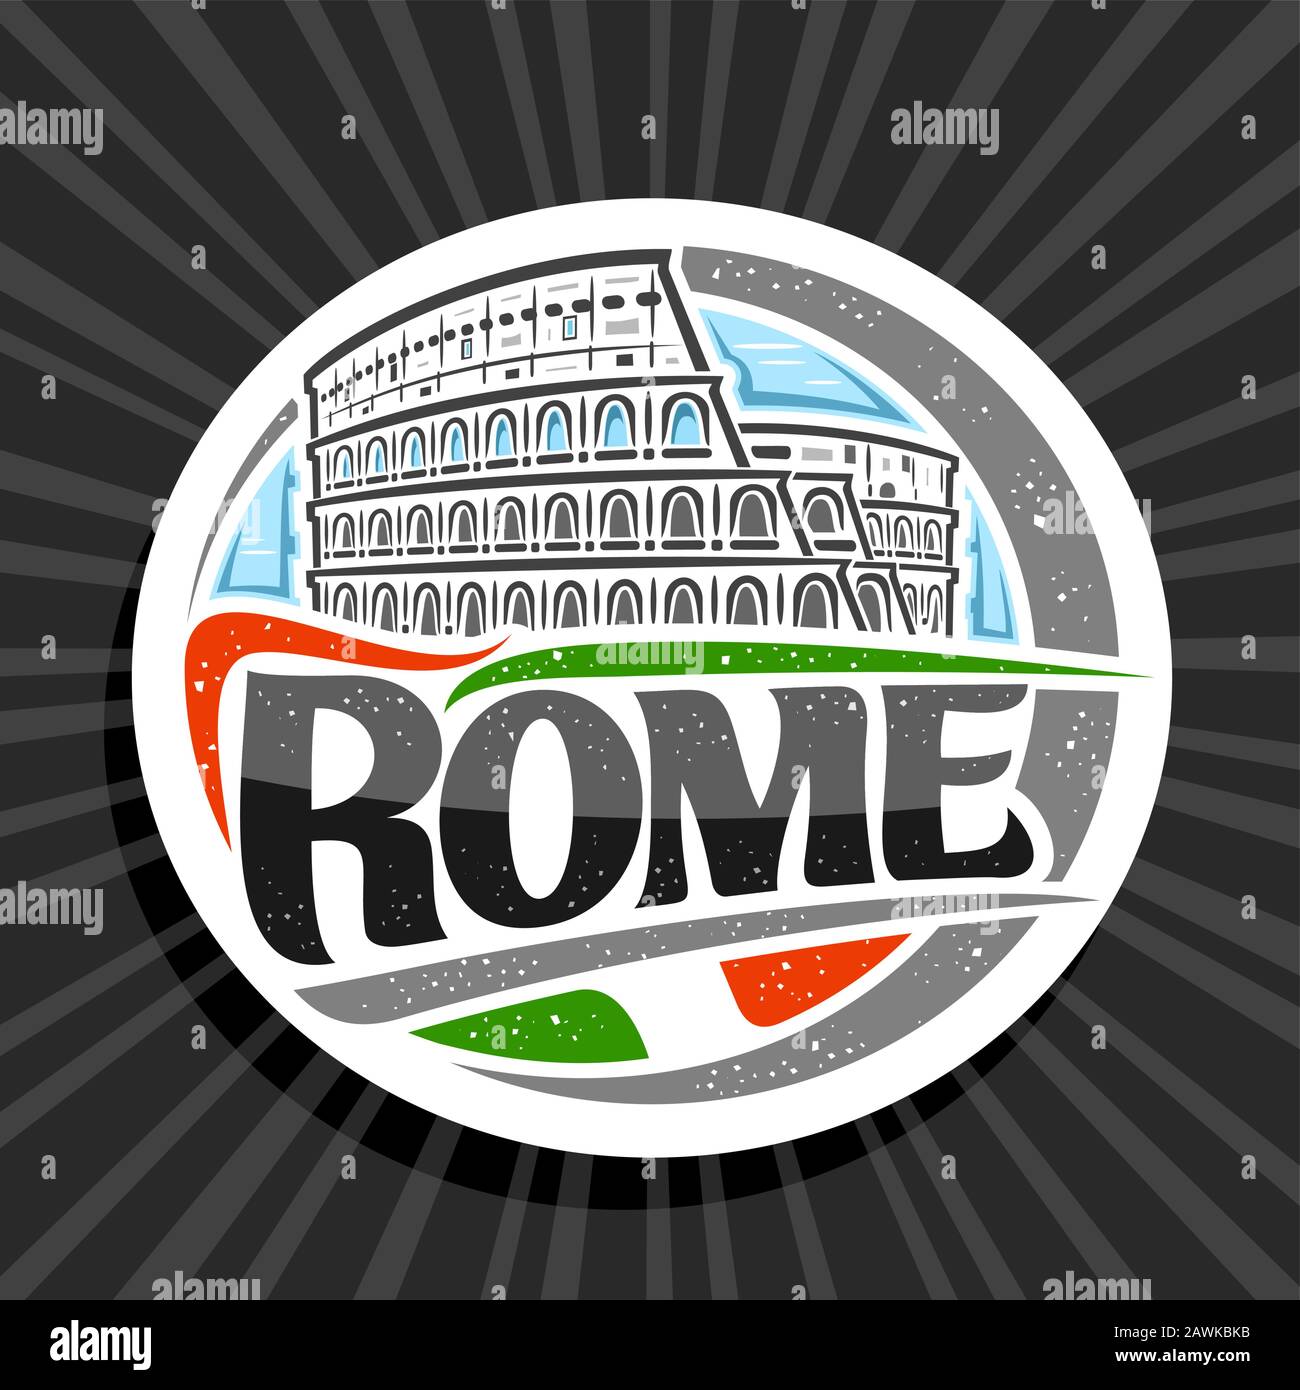 Logo Vector per Roma, etichetta rotonda decorativa bianca con illustrazione del vecchio colosseo di roma sullo sfondo del cielo del giorno, magnete per frigorifero turistico con spazzola Illustrazione Vettoriale